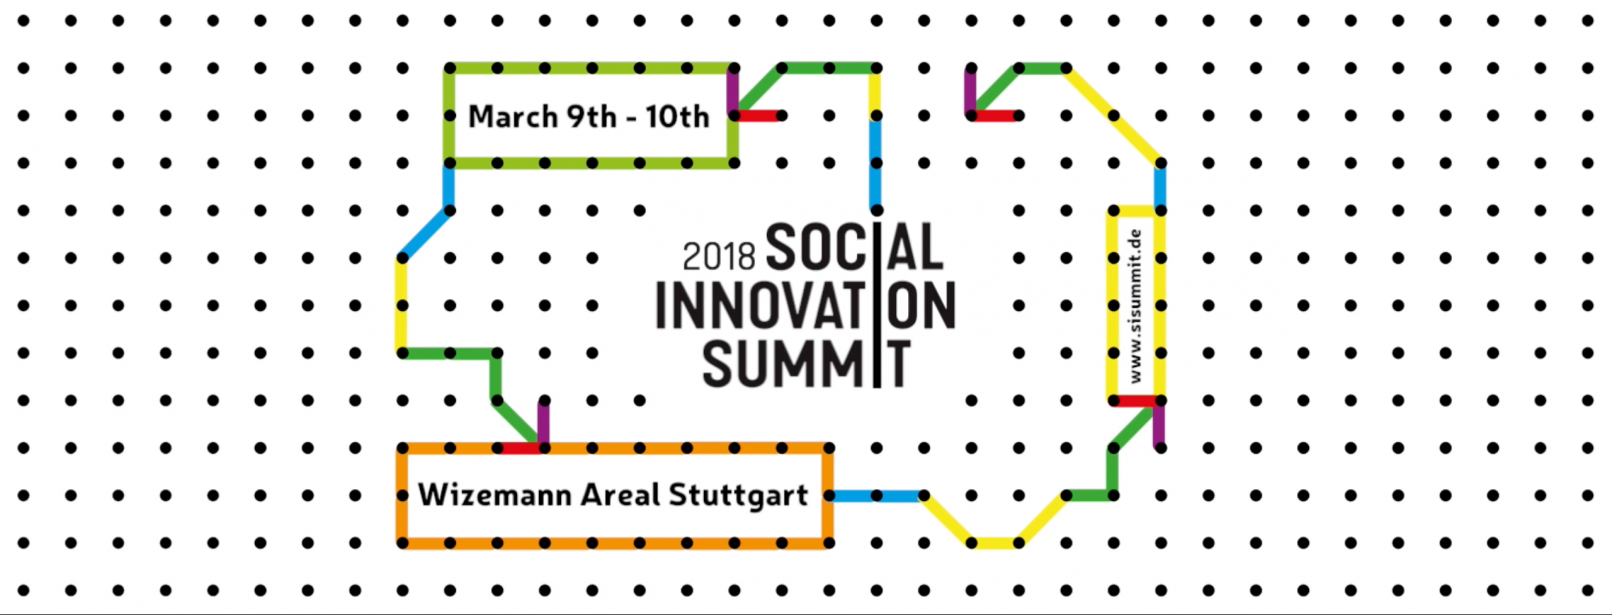 Social Innovation Summit Social Design